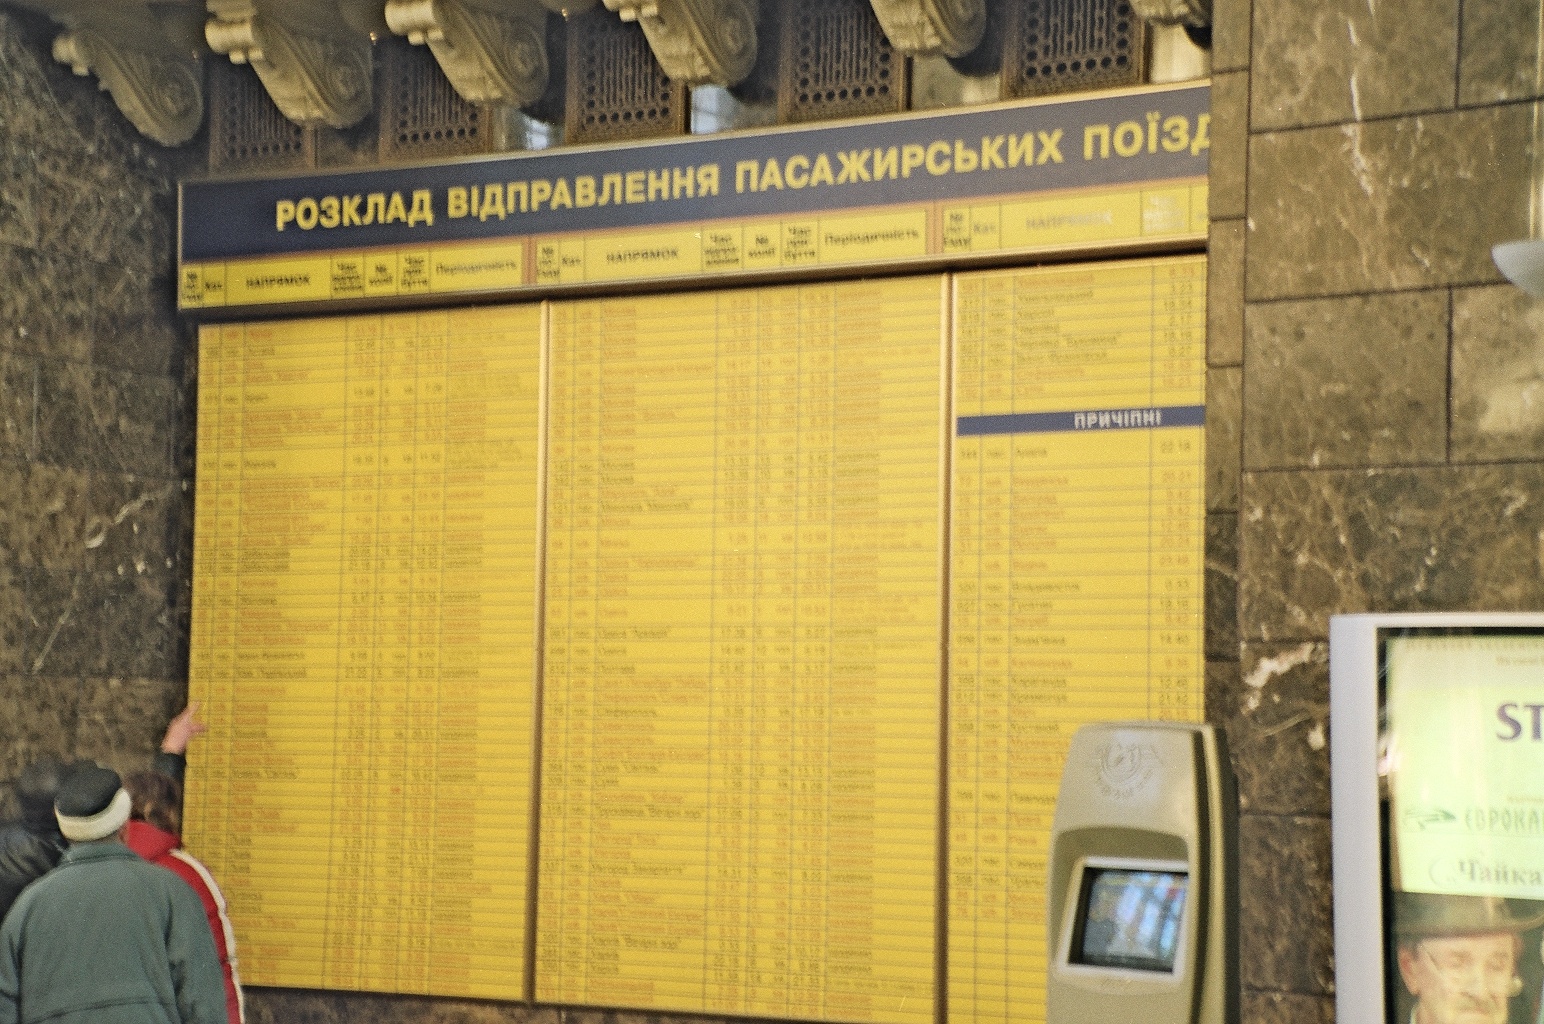 Ukraine - Kiev Station 05